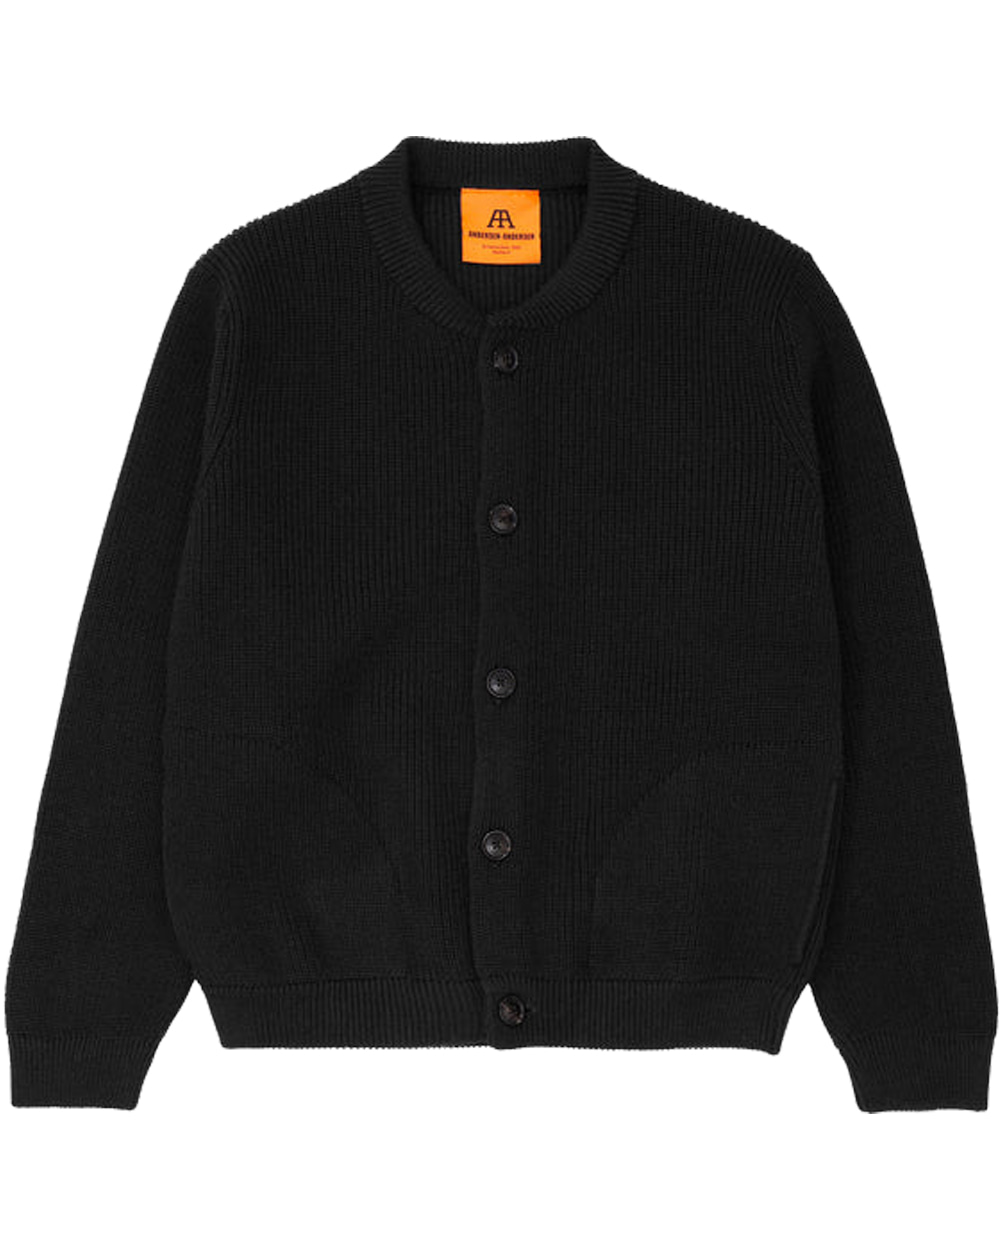 안데르센 안데르센 Skipper jacket (Black)